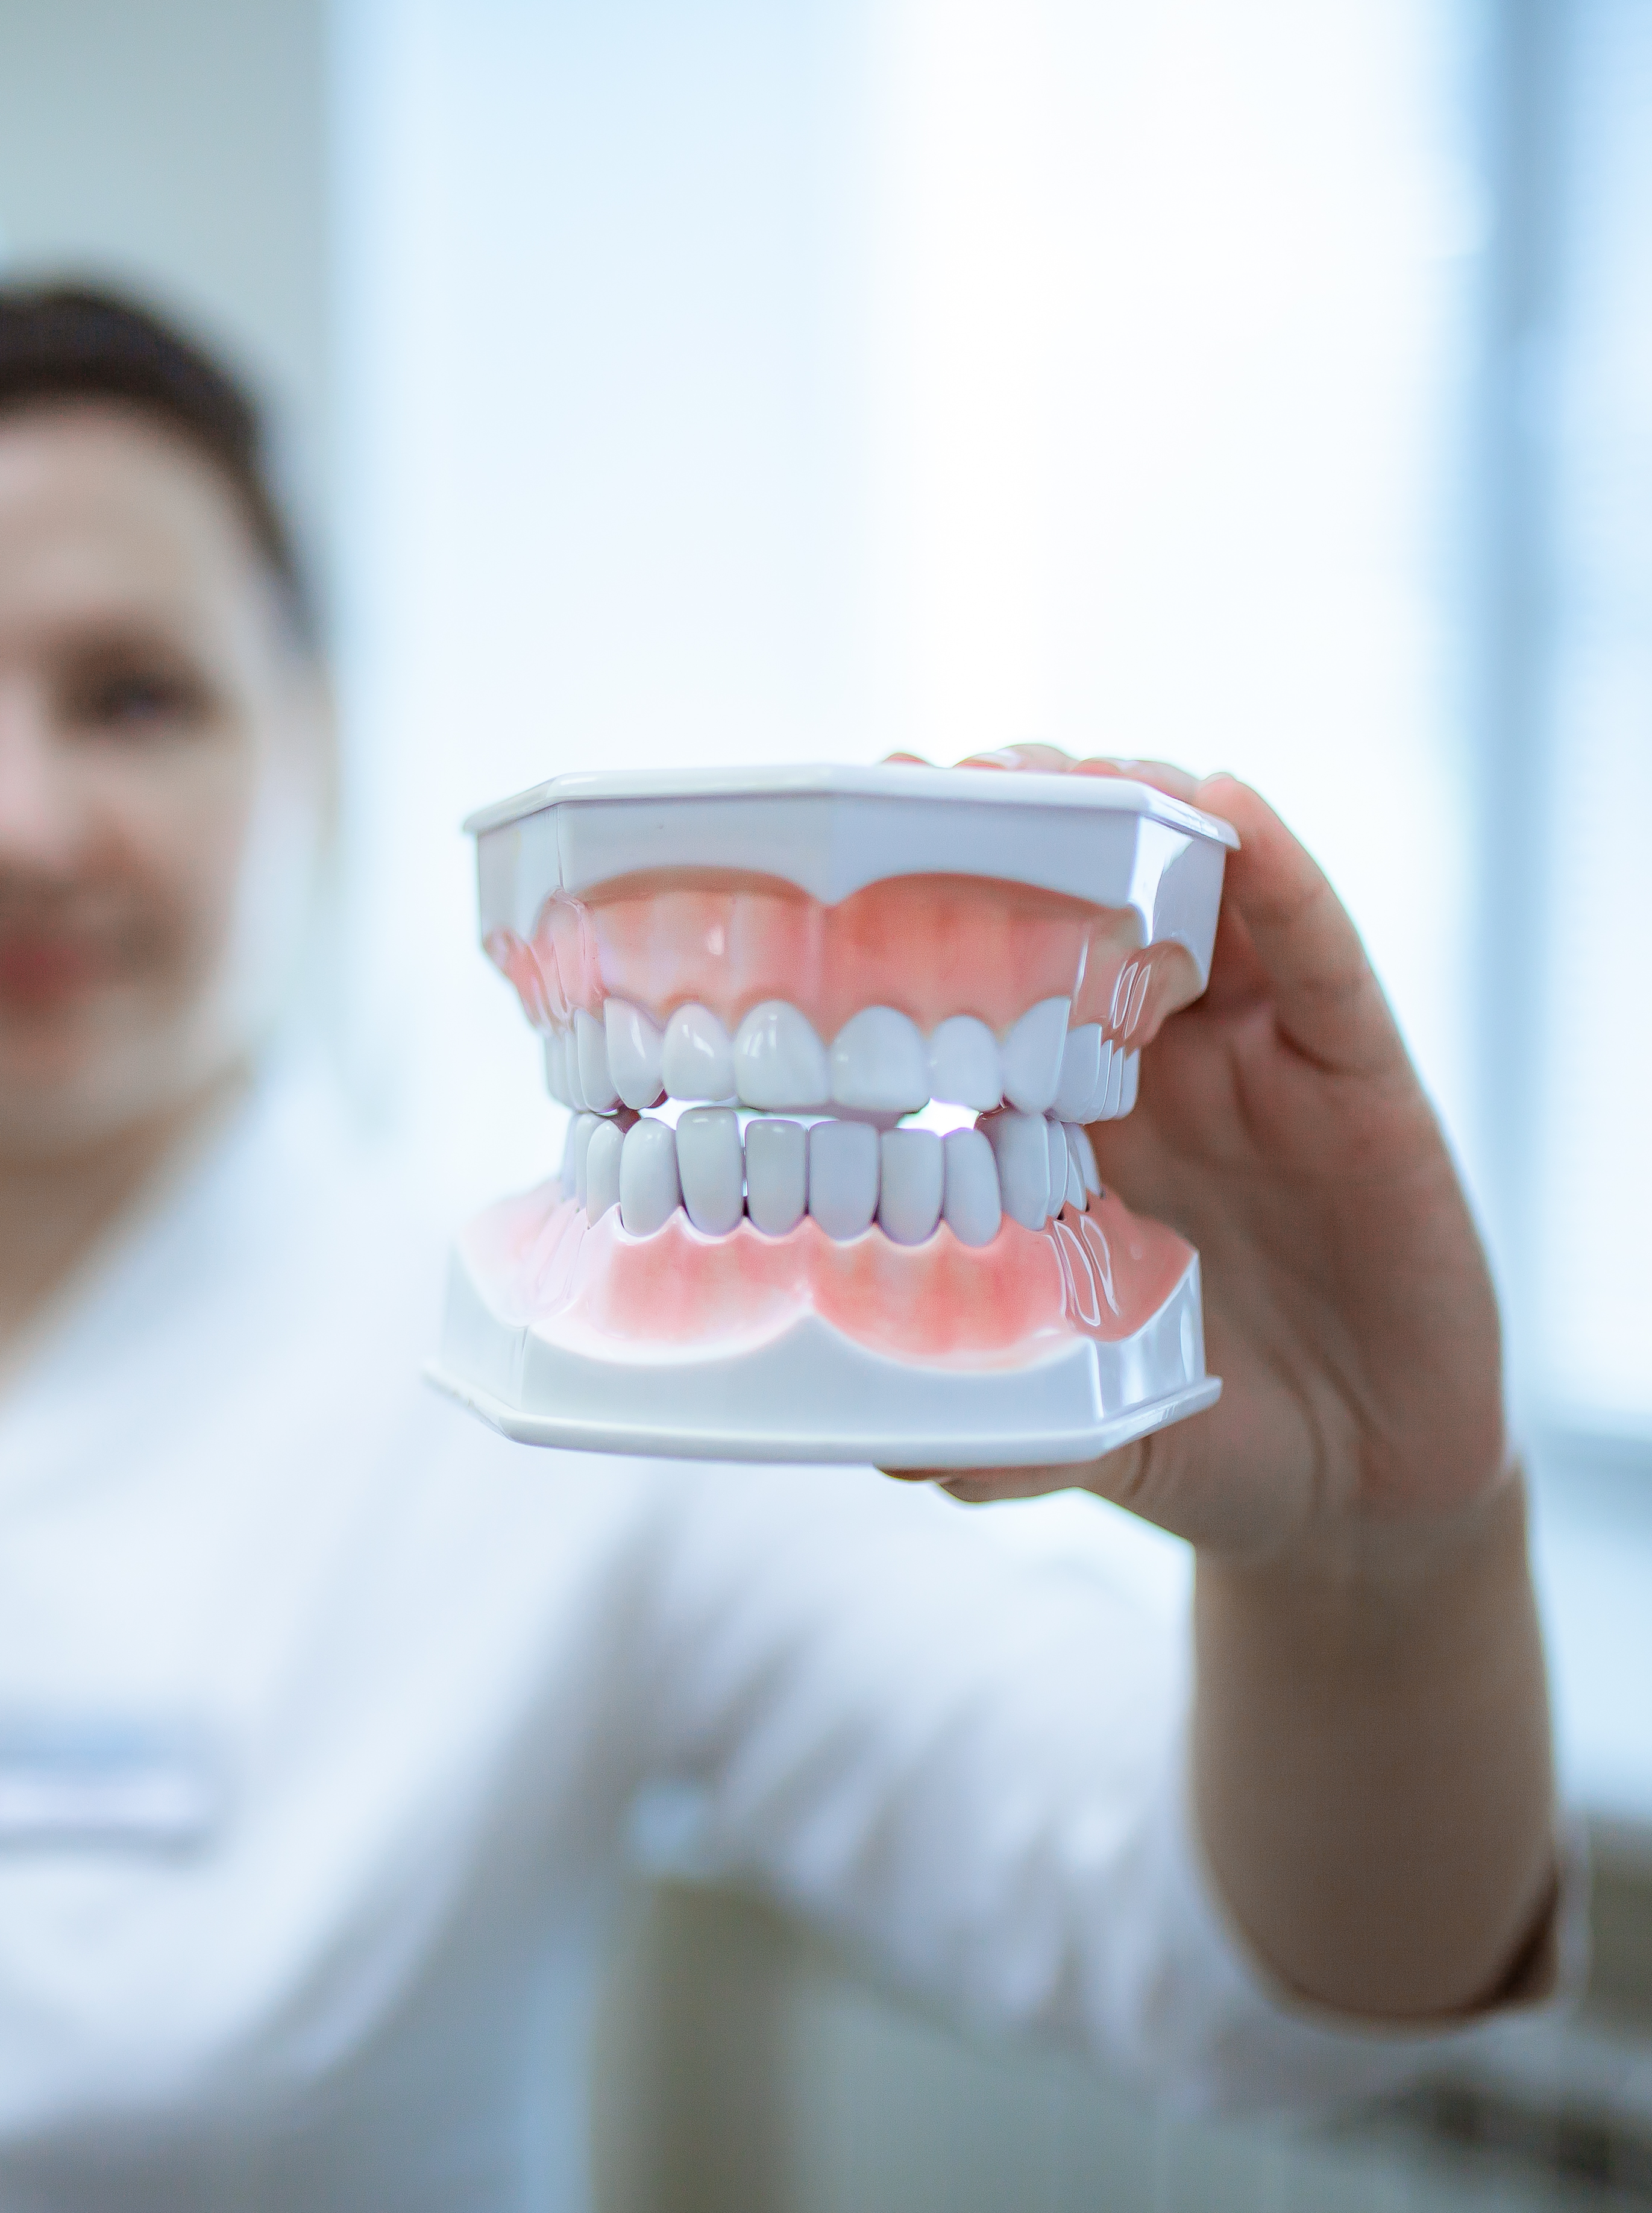 Какие зубы подлежат удалению?